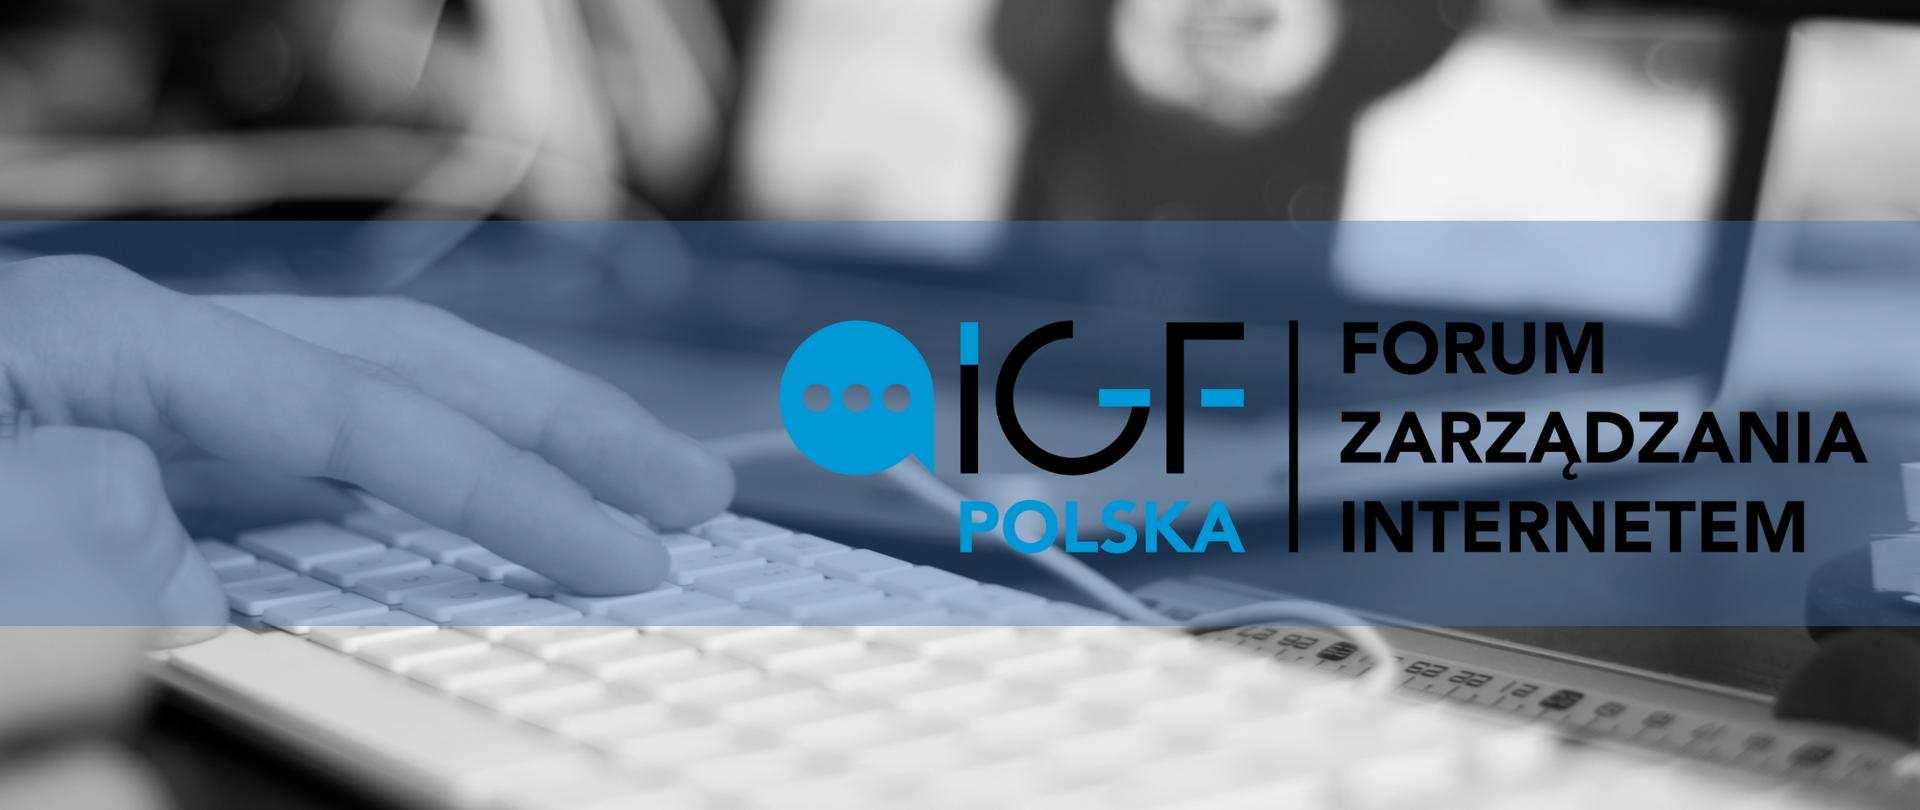 Forum Zarządzania Internetem IGF